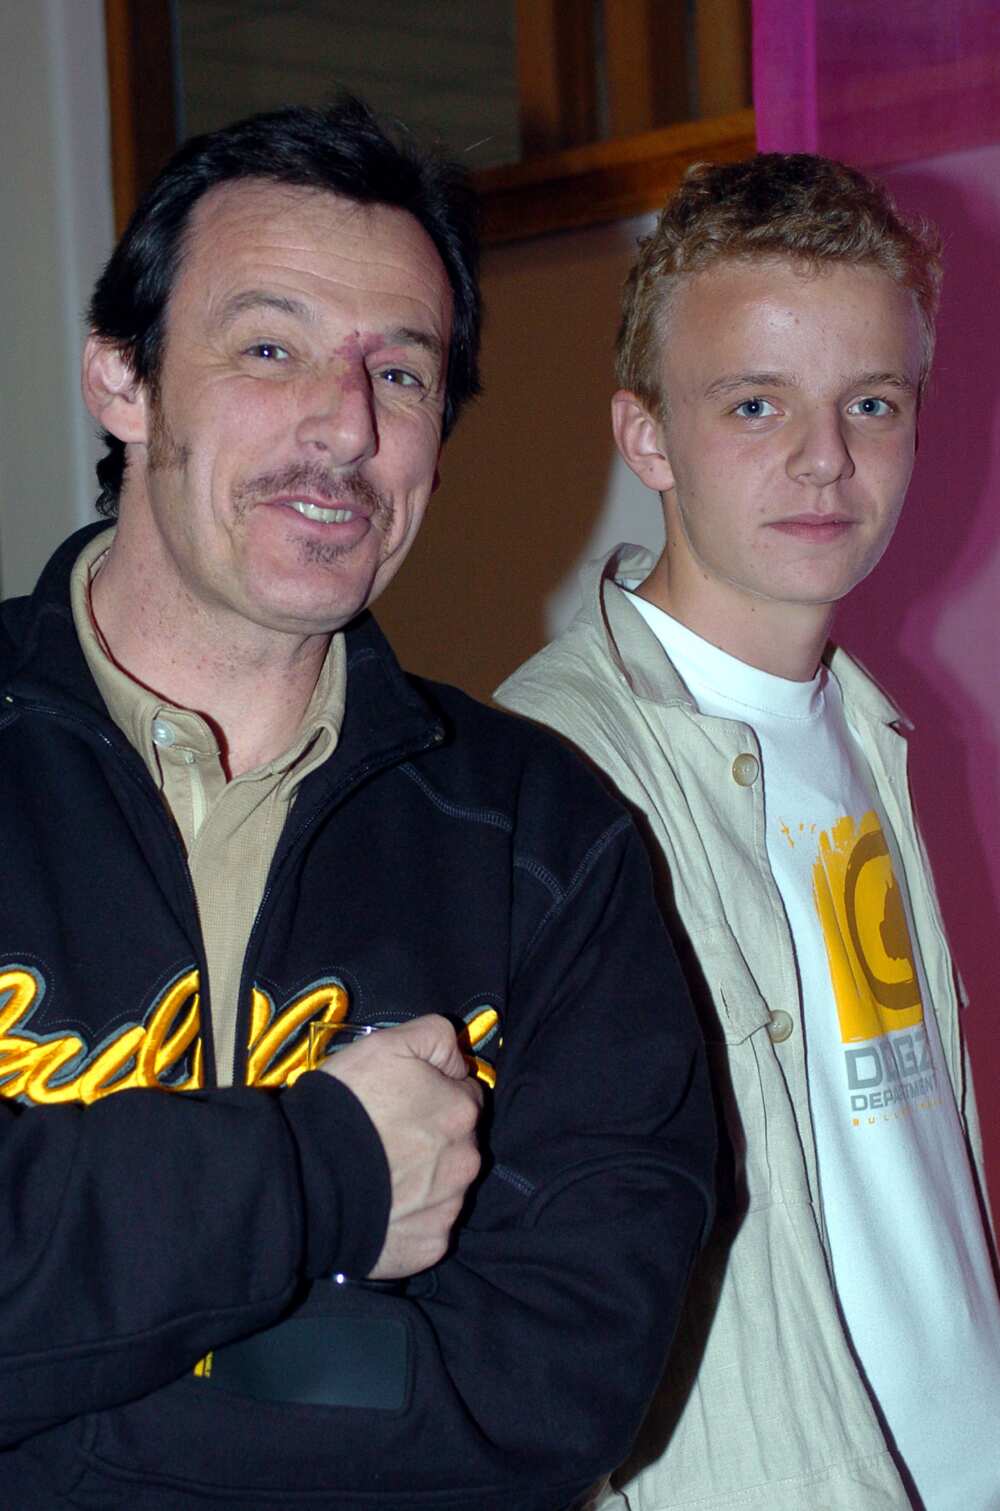 Jean-Luc Reichmann et son fils
Photo : Eddy LEMAISTRE/Corbis via Getty Images